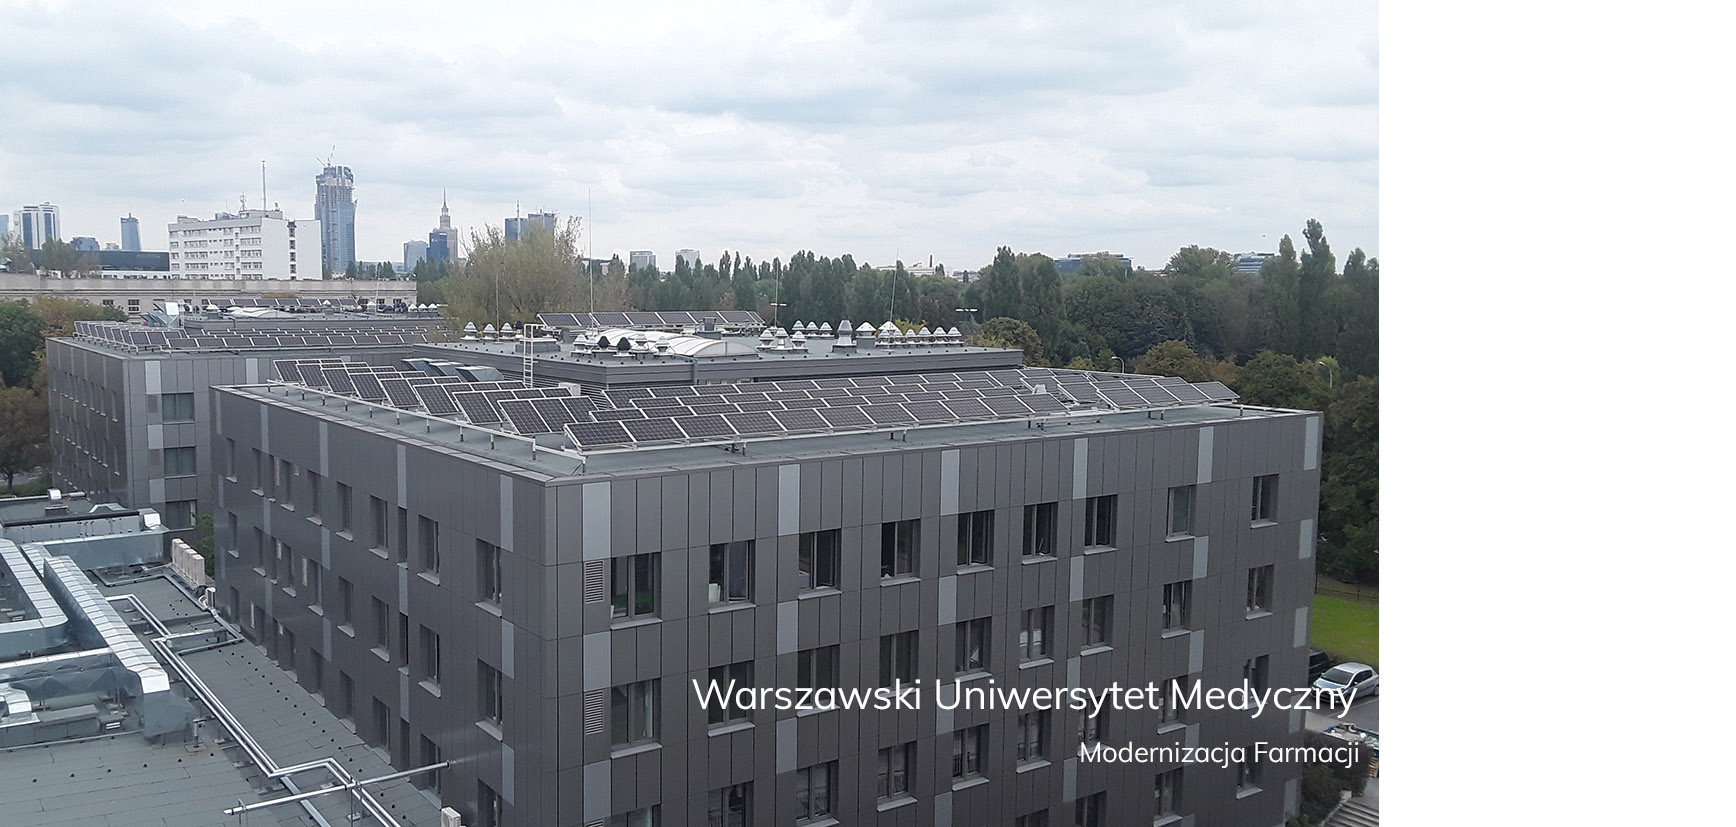 Warszawski Uniwersytet Medyczny Modernizacja Farmacji